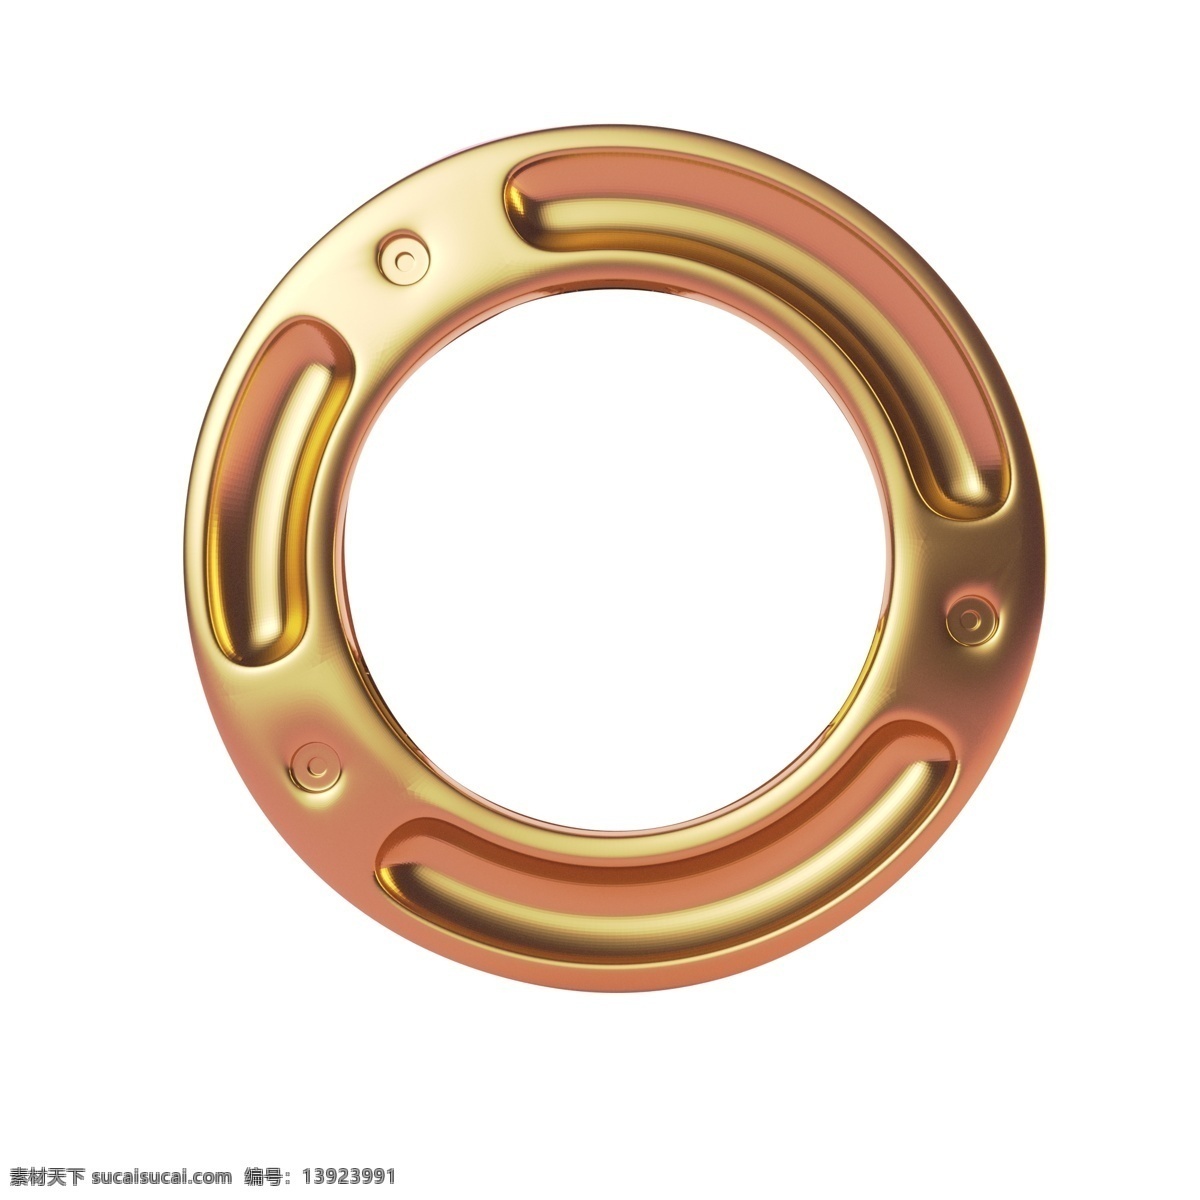 金色 光泽 圆环 元素 质感 环绕 纹理 圆润 电商 活动 电子 凹槽 旋转